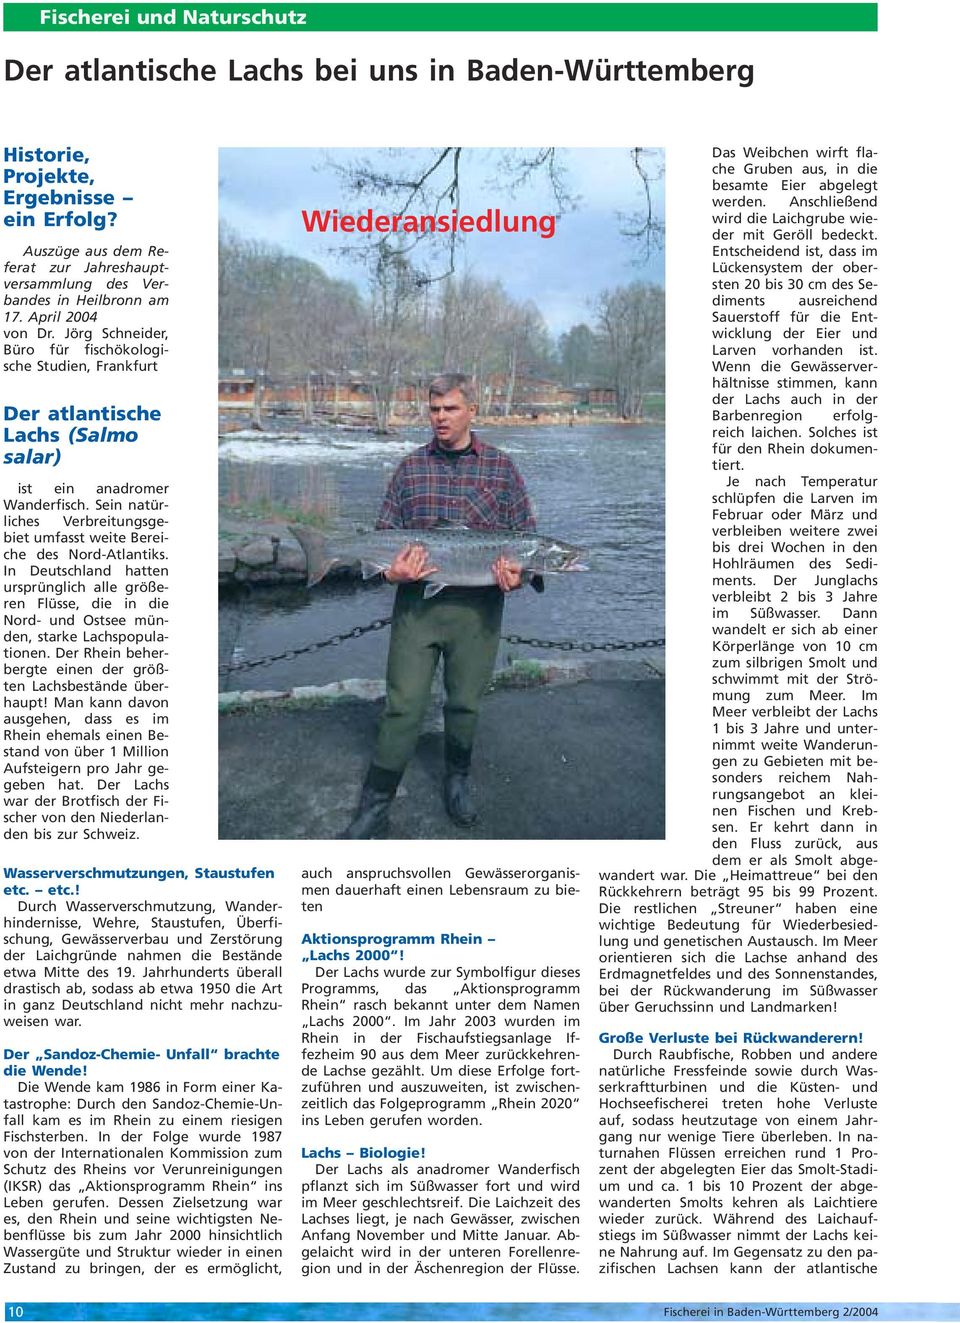 Jörg Schneider, Büro für fischökologische Studien, Frankfurt Der atlantische Lachs (Salmo salar) ist ein anadromer Wanderfisch.